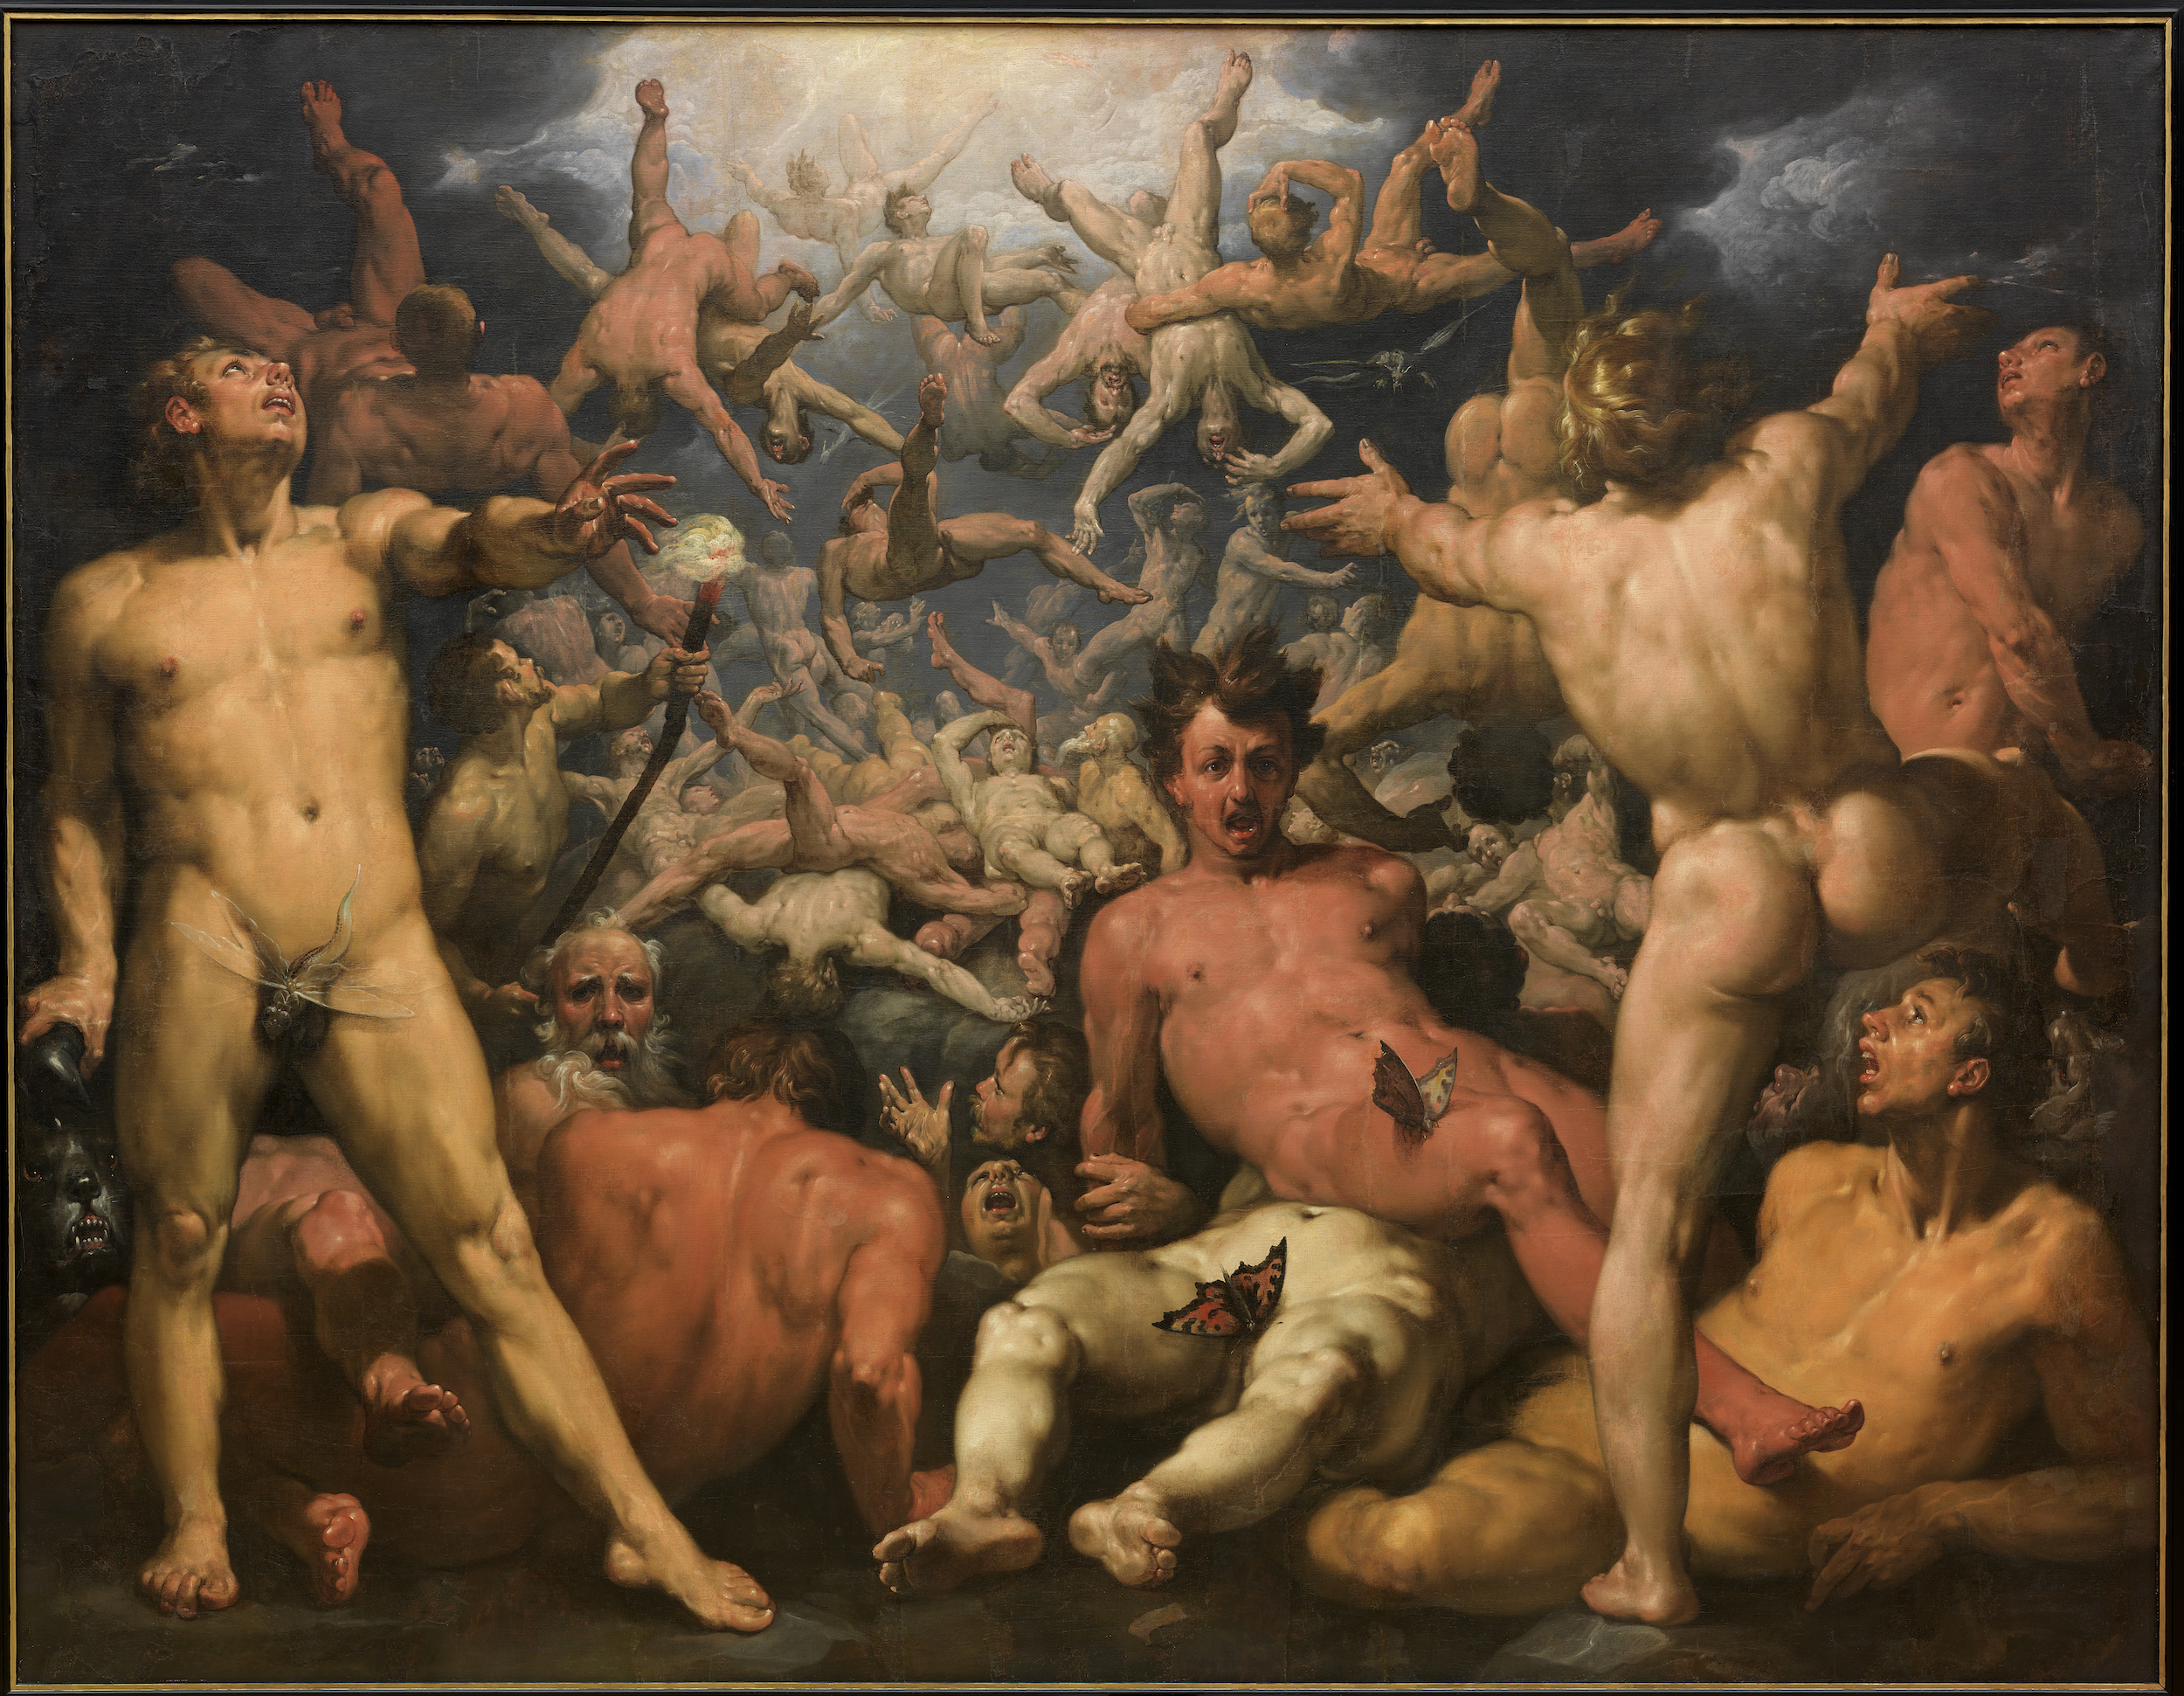 La caduta dei Titani (La Titanomachia) by Cornelis Cornelisz van Haarlem - 1588-90 - 239 x 307 cm 